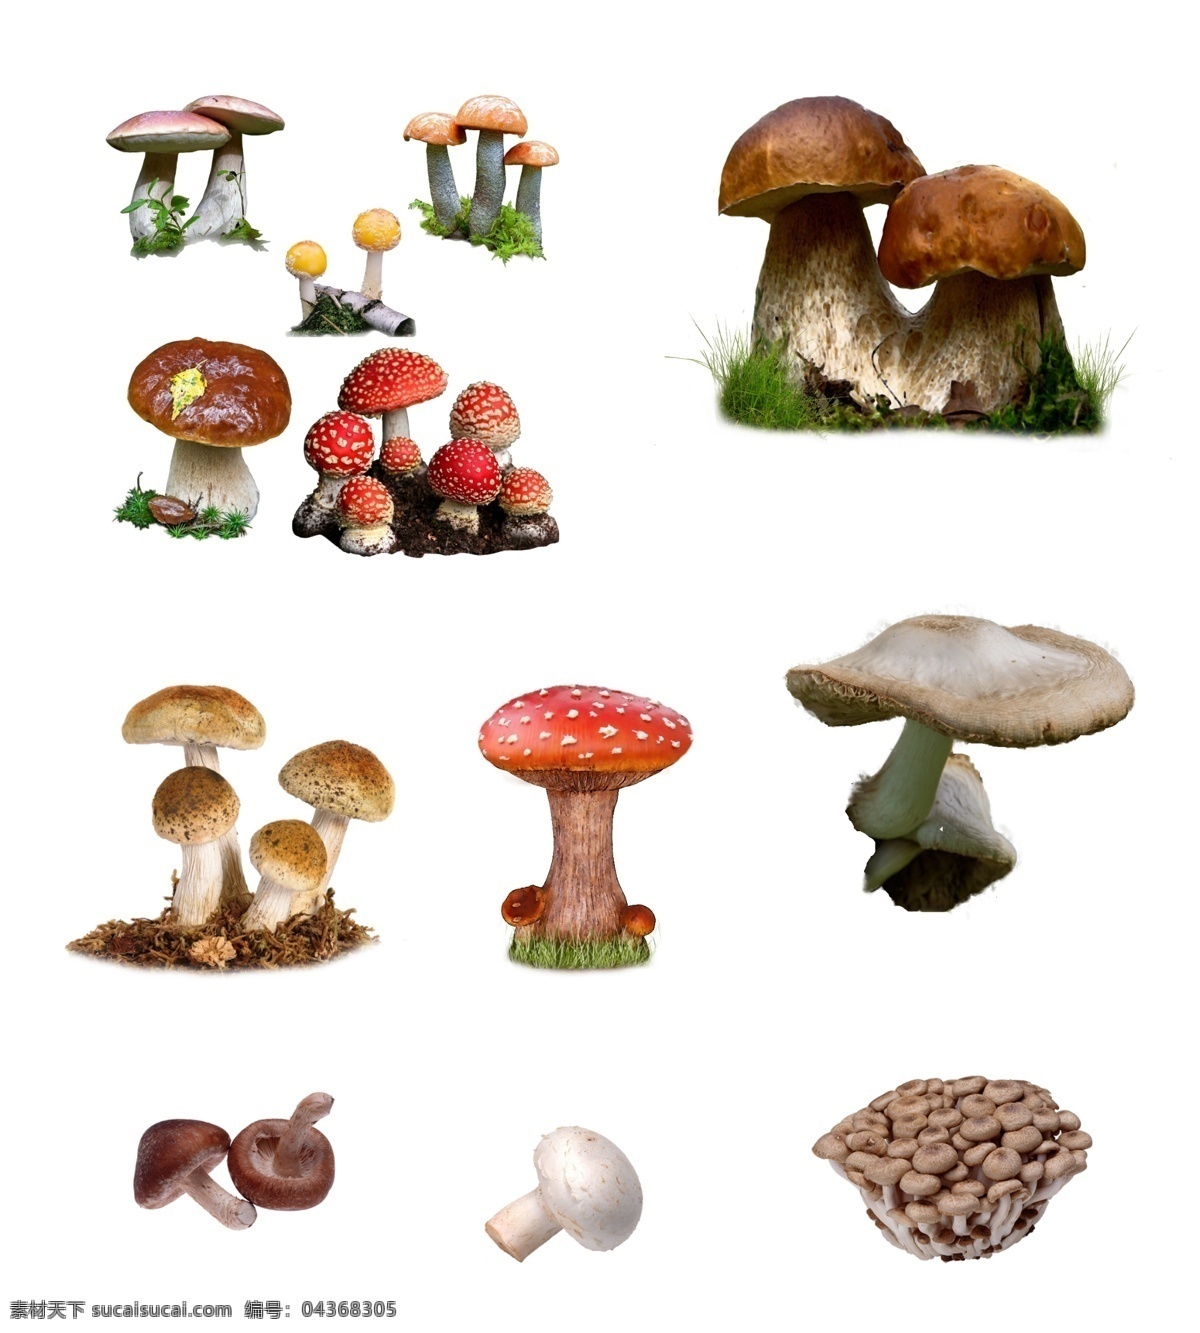 蘑菇分层素材 分层 蘑菇素材 蘑菇 菌类 野生菌 野生蘑菇 食用蘑菇 设计素材 psd素材 集 源文件